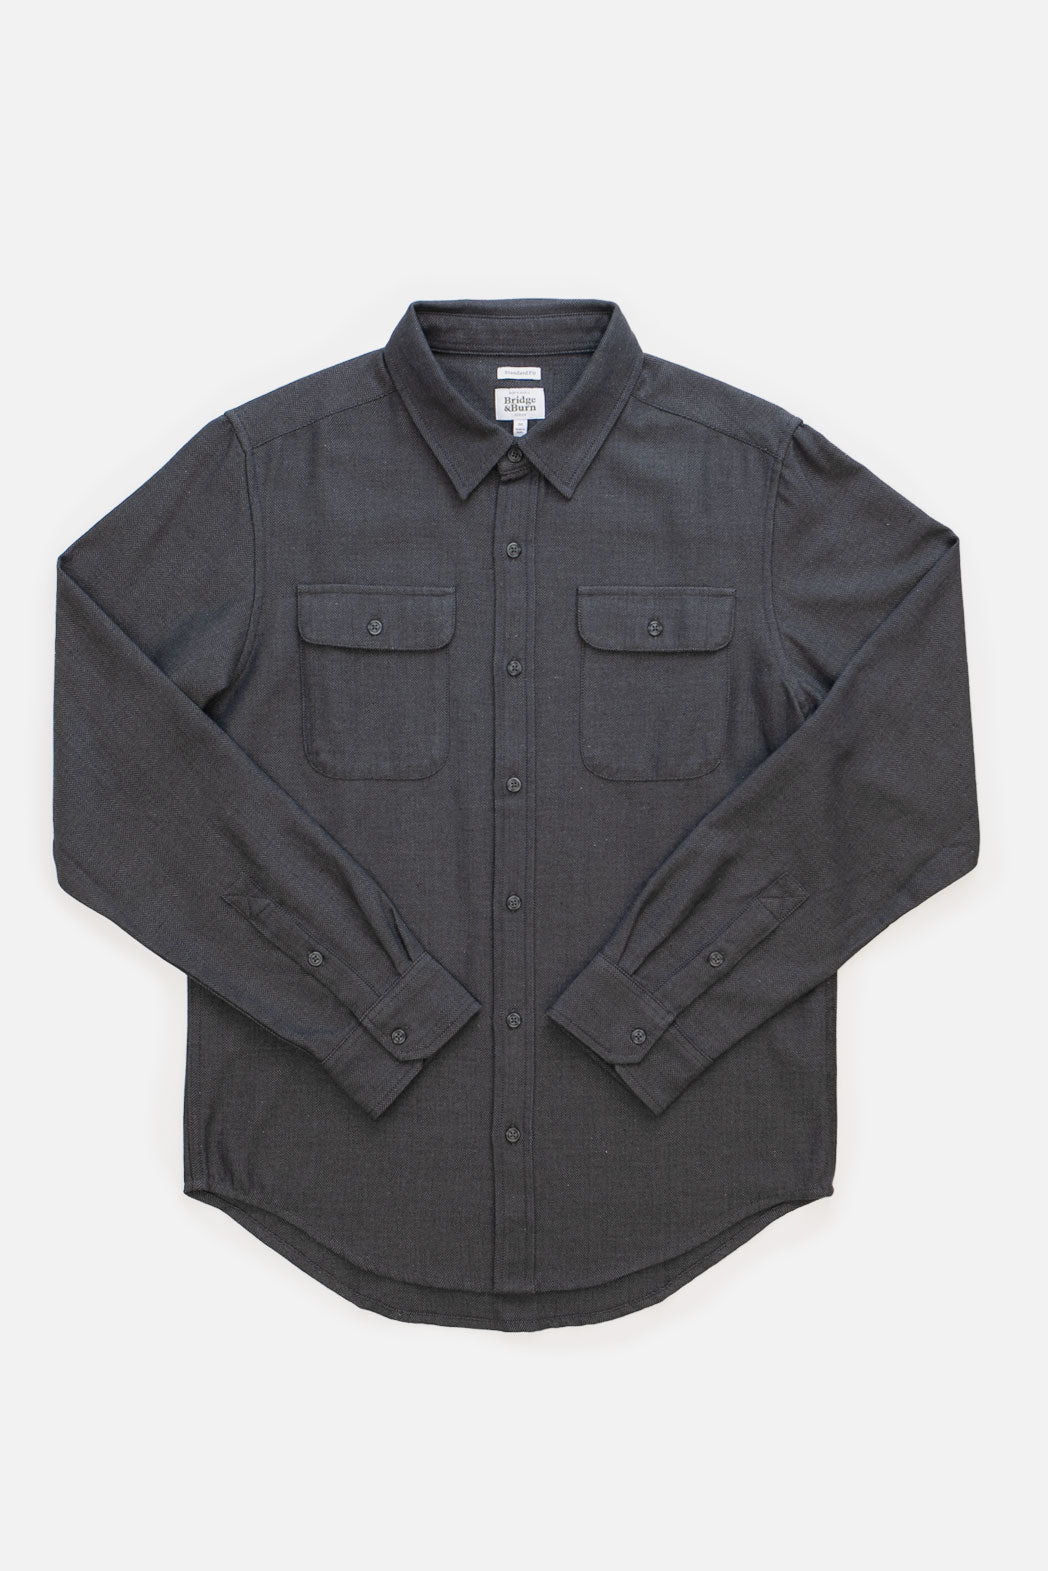 Bedford Shirt / Charcoal Herringbone